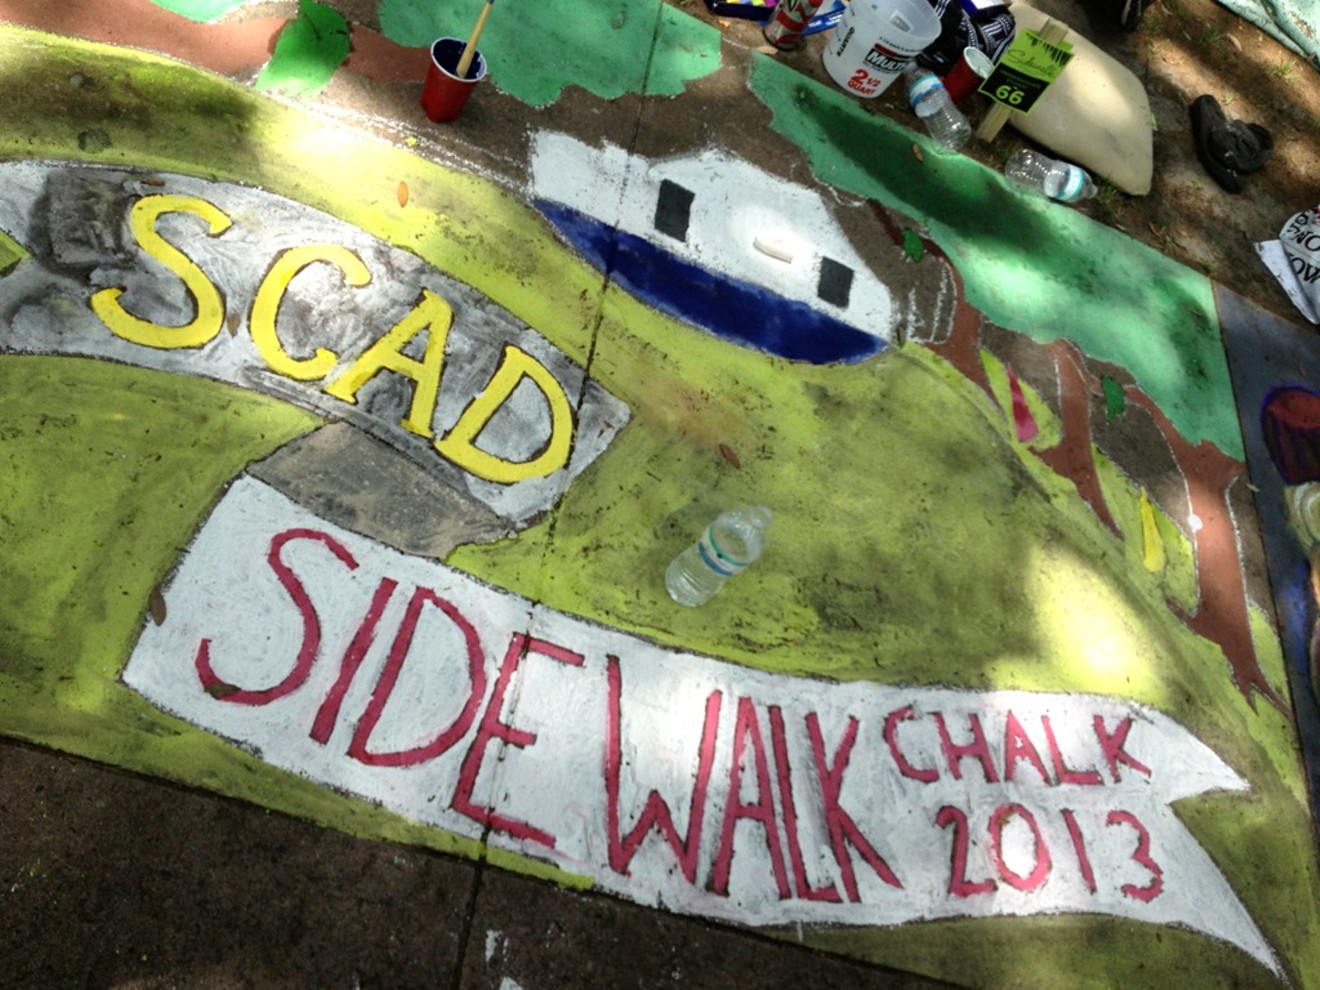 Sidewalk Arts 2013